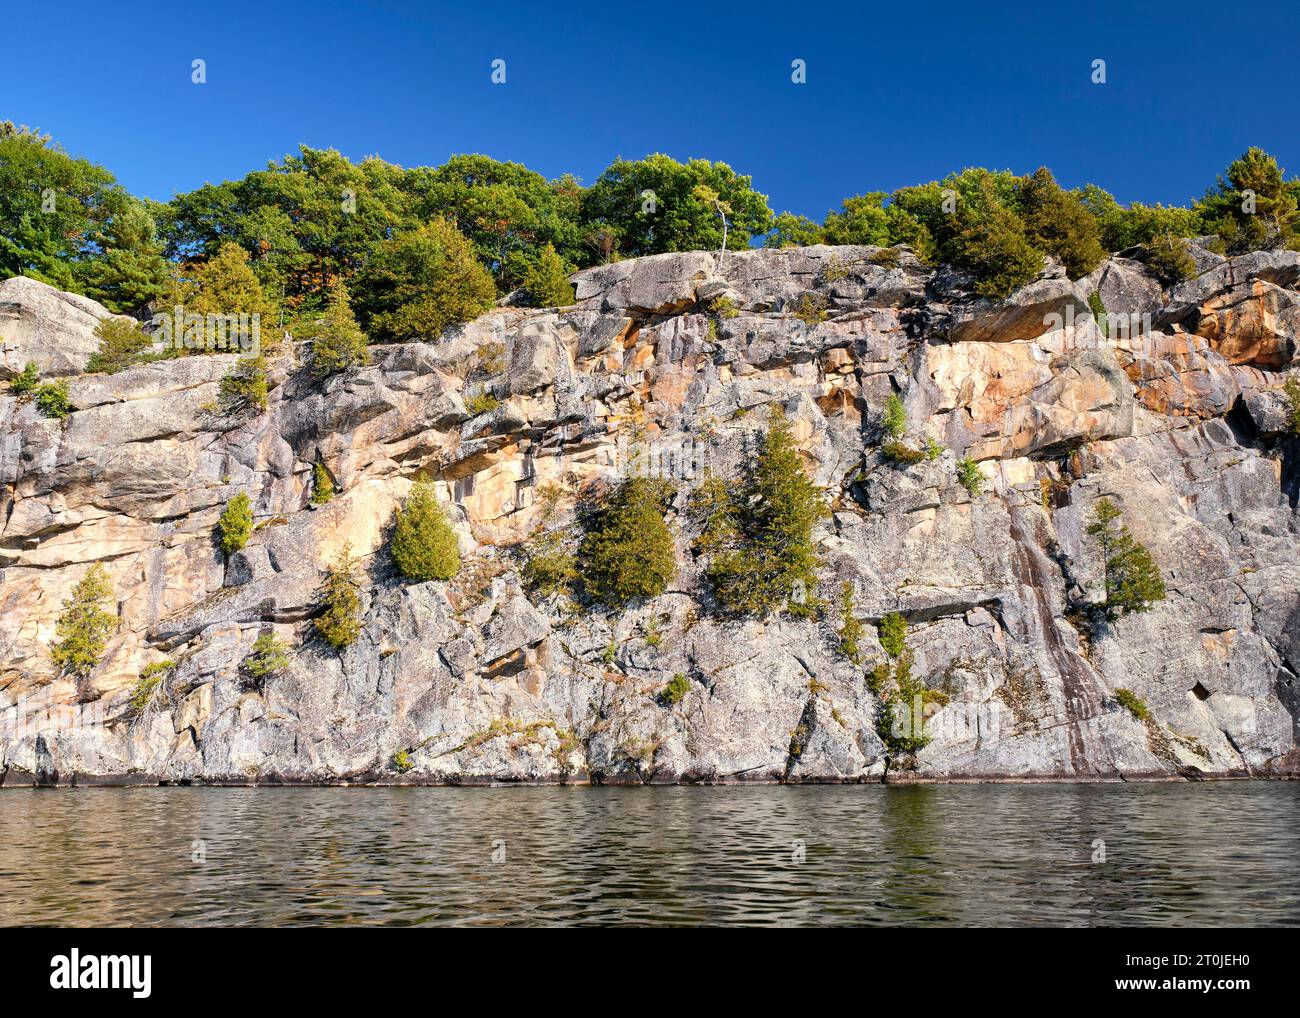 Eine riesige Felsklippe aus Granit mit Bäumen, die an der Seite wachsen, erhebt sich direkt aus dem Wasser des Skeleton Lake in Muskoka, Ontario. Stockfoto